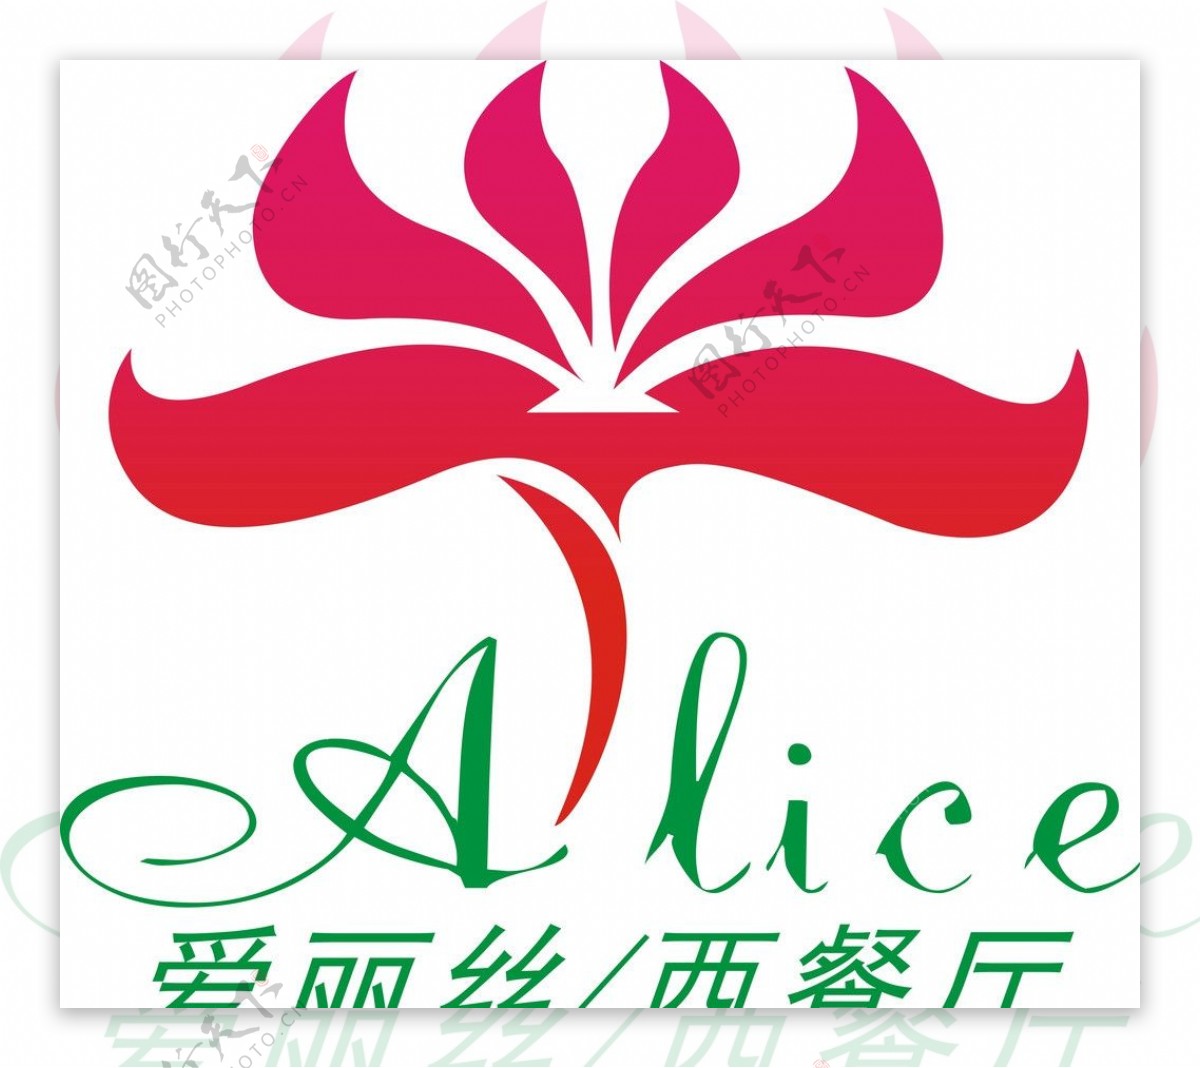 西餐厅logo爱丽丝logo爱丽丝图片